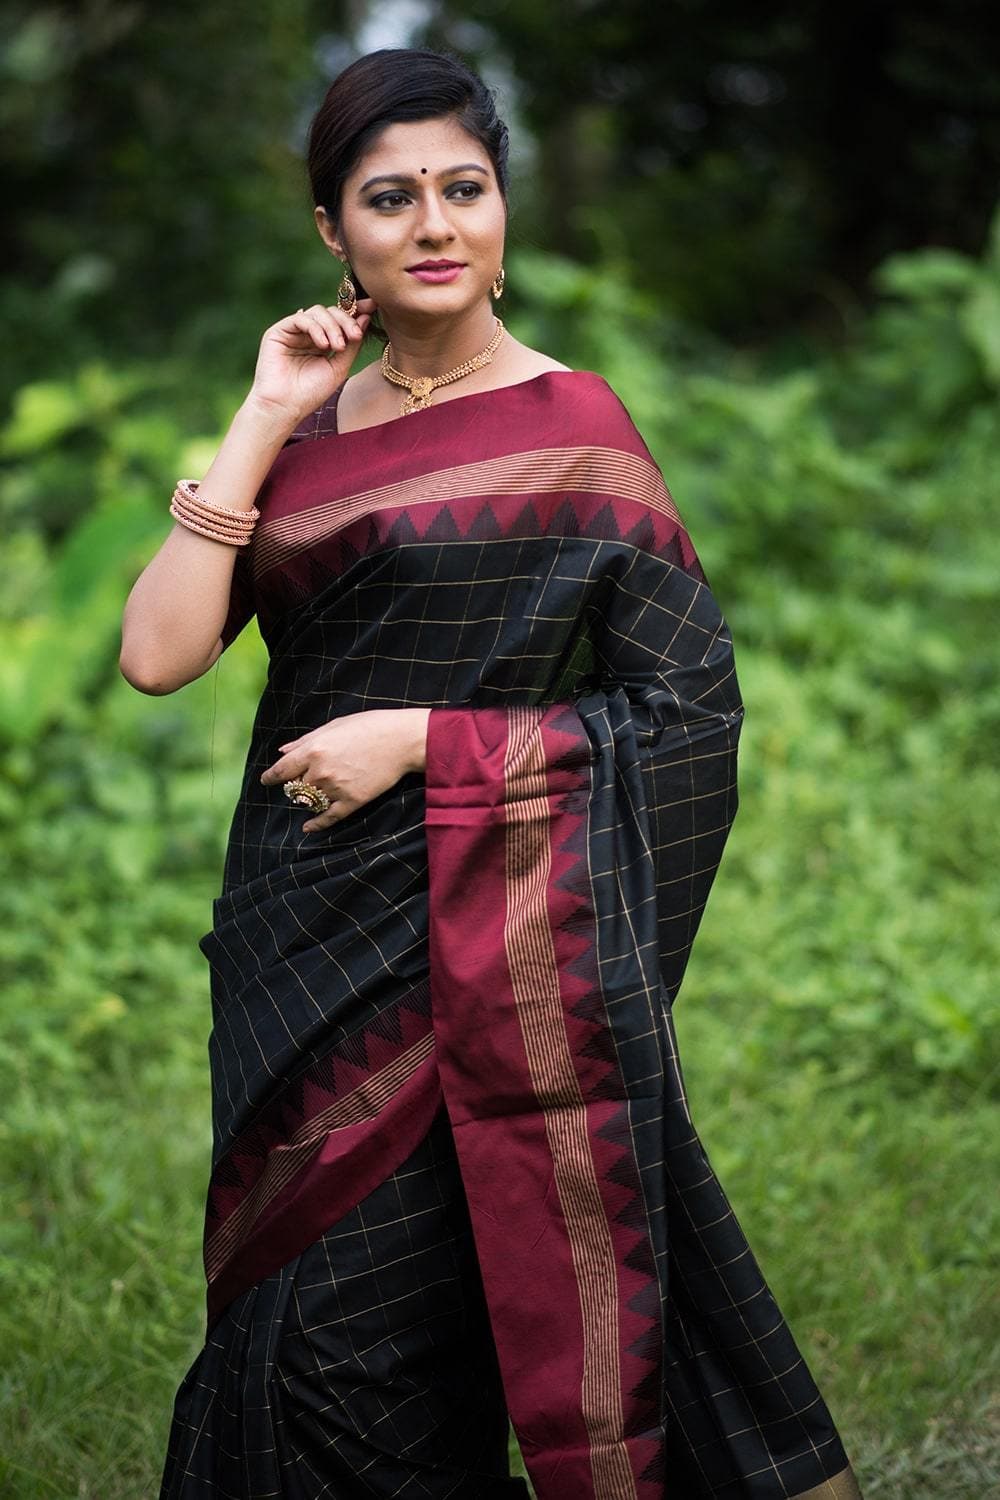 Buy the elegant black banarasi raw silk saree online on Karagiri | BUY NOW